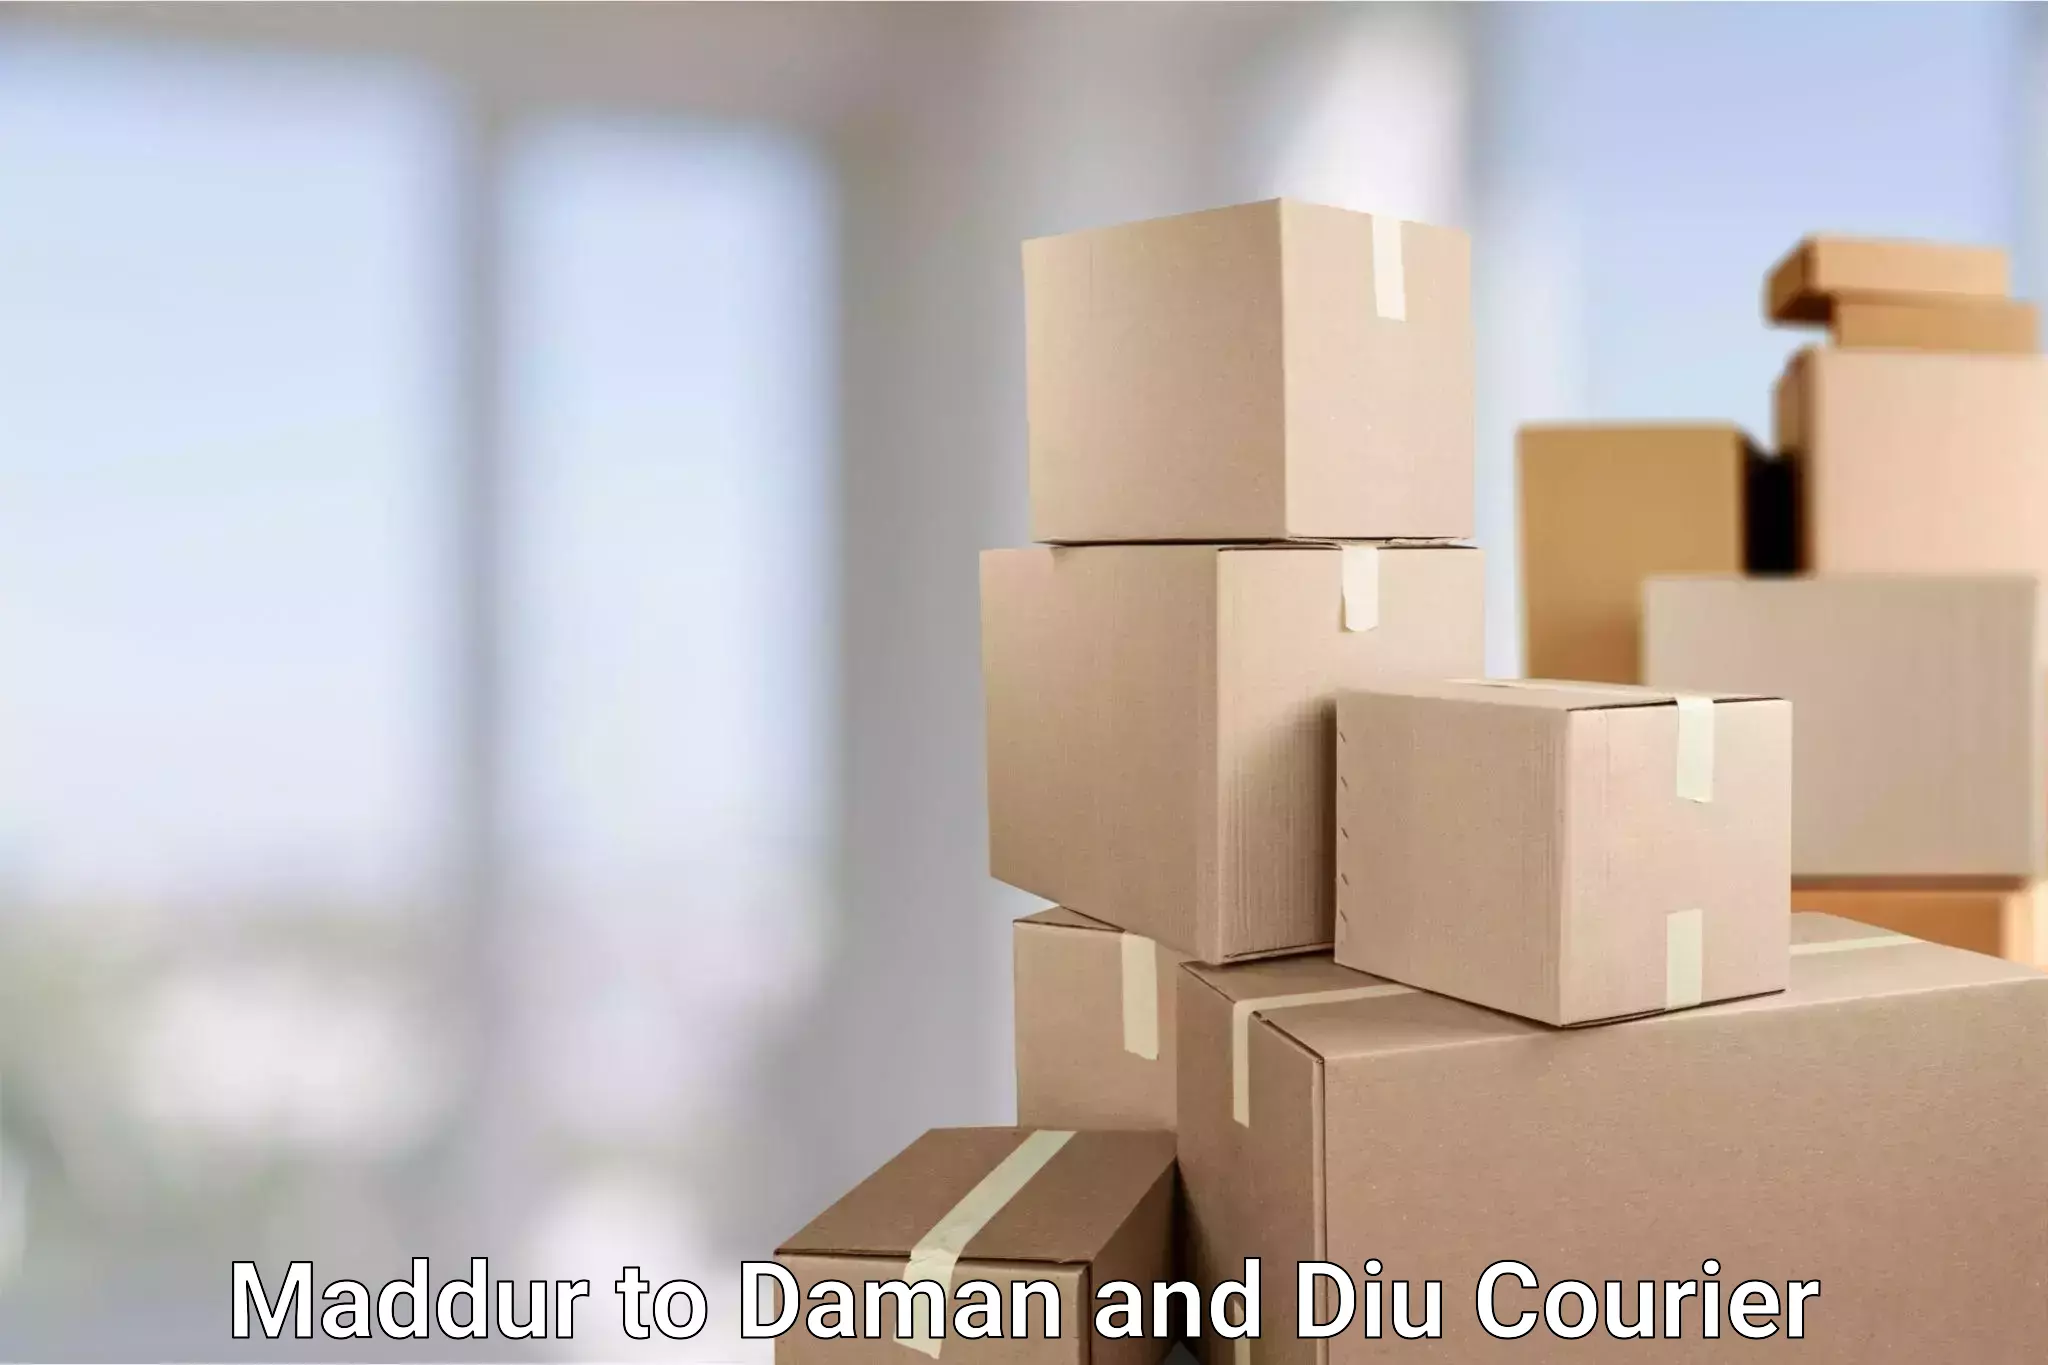 Digital courier platforms Maddur to Daman and Diu